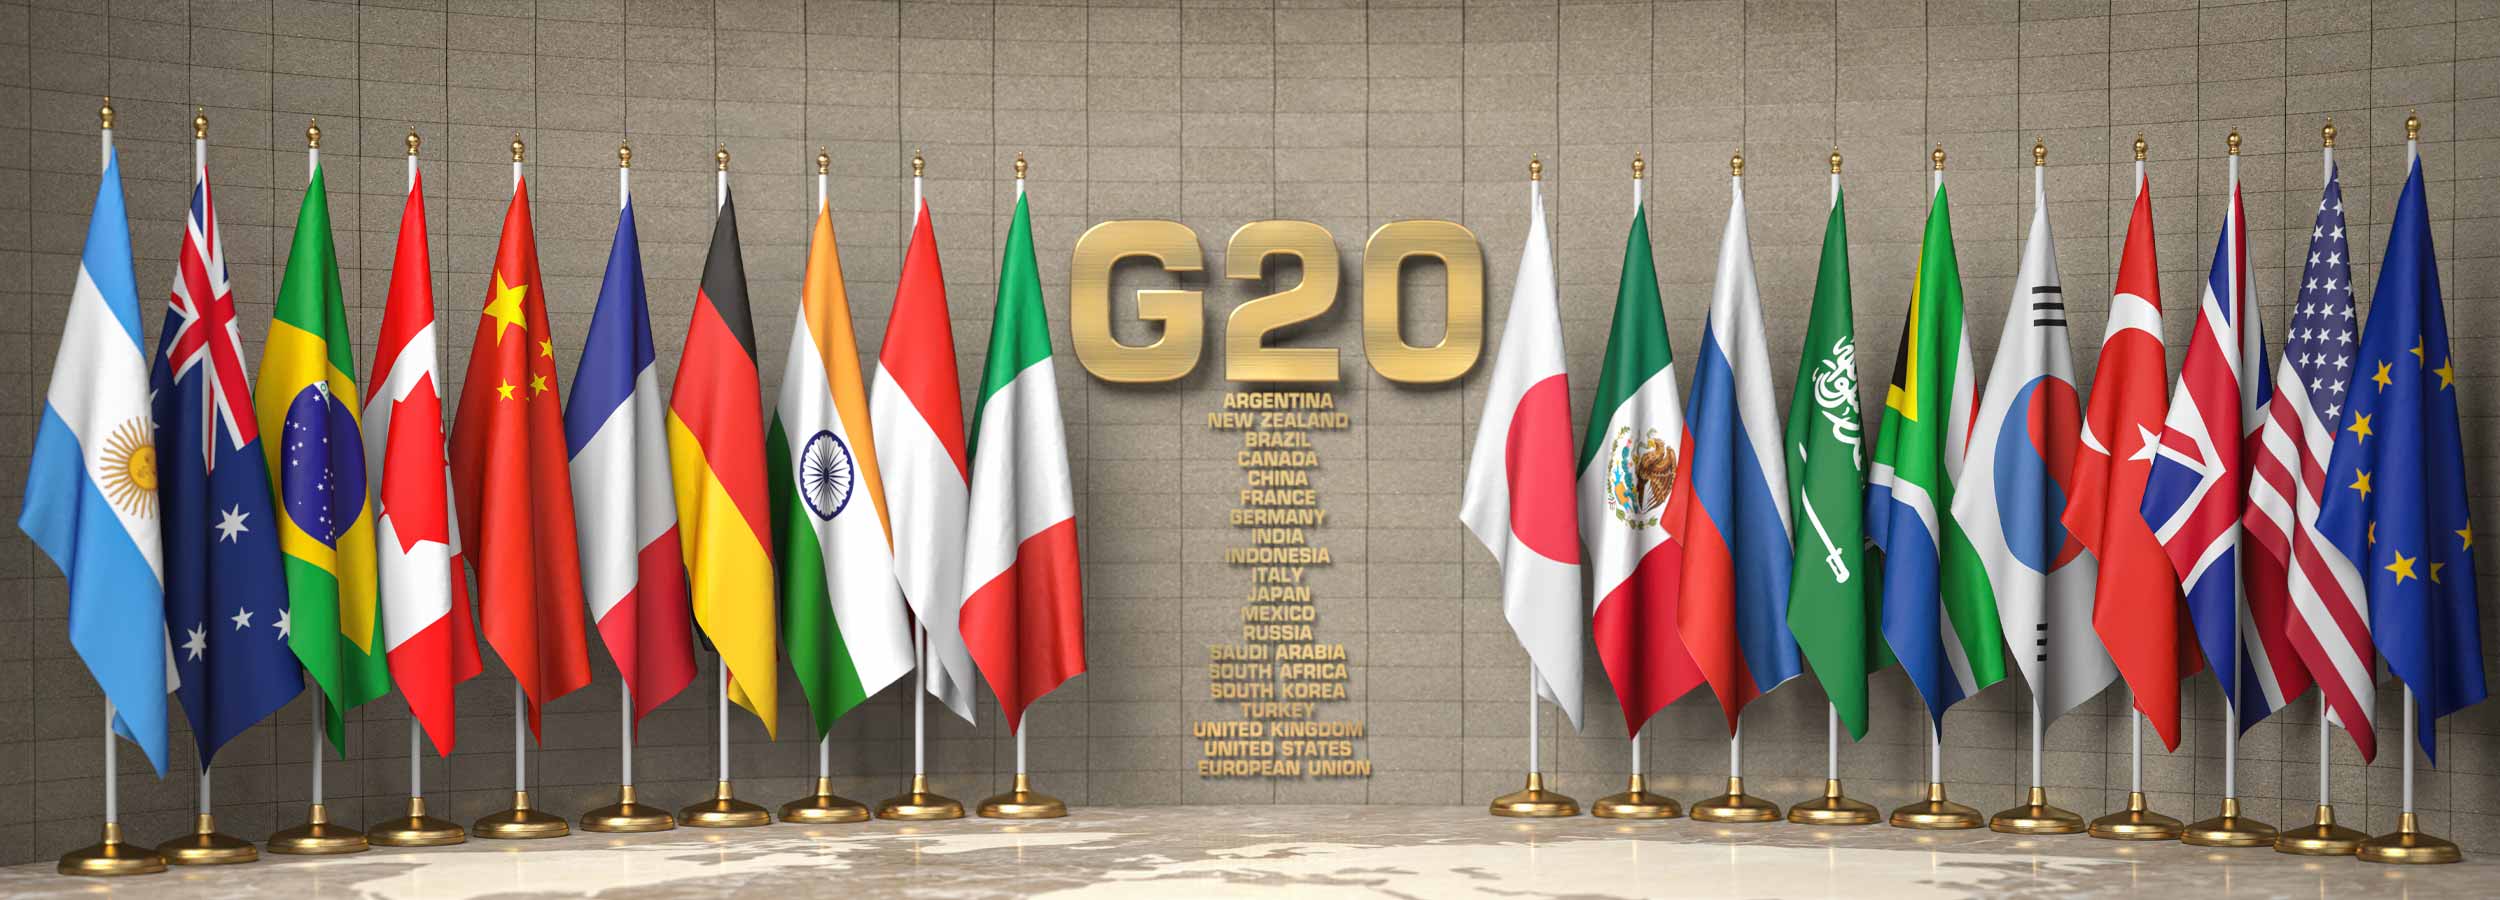 “G20